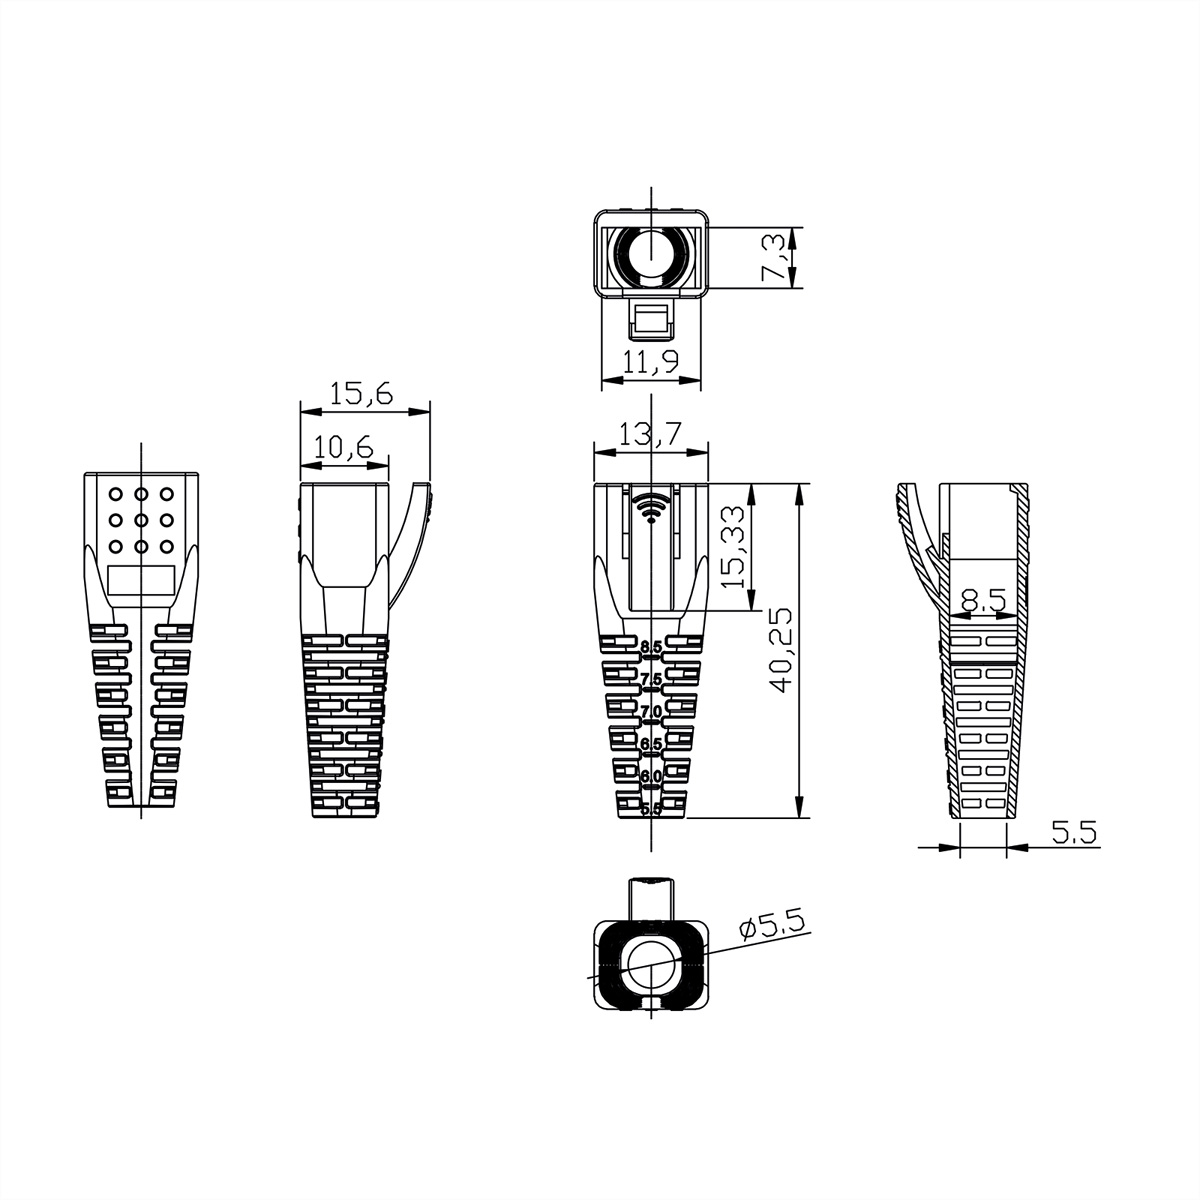 ROLINE Knickschutztülle für RJ-45 Tüllen Plugs Modular für RJ-45